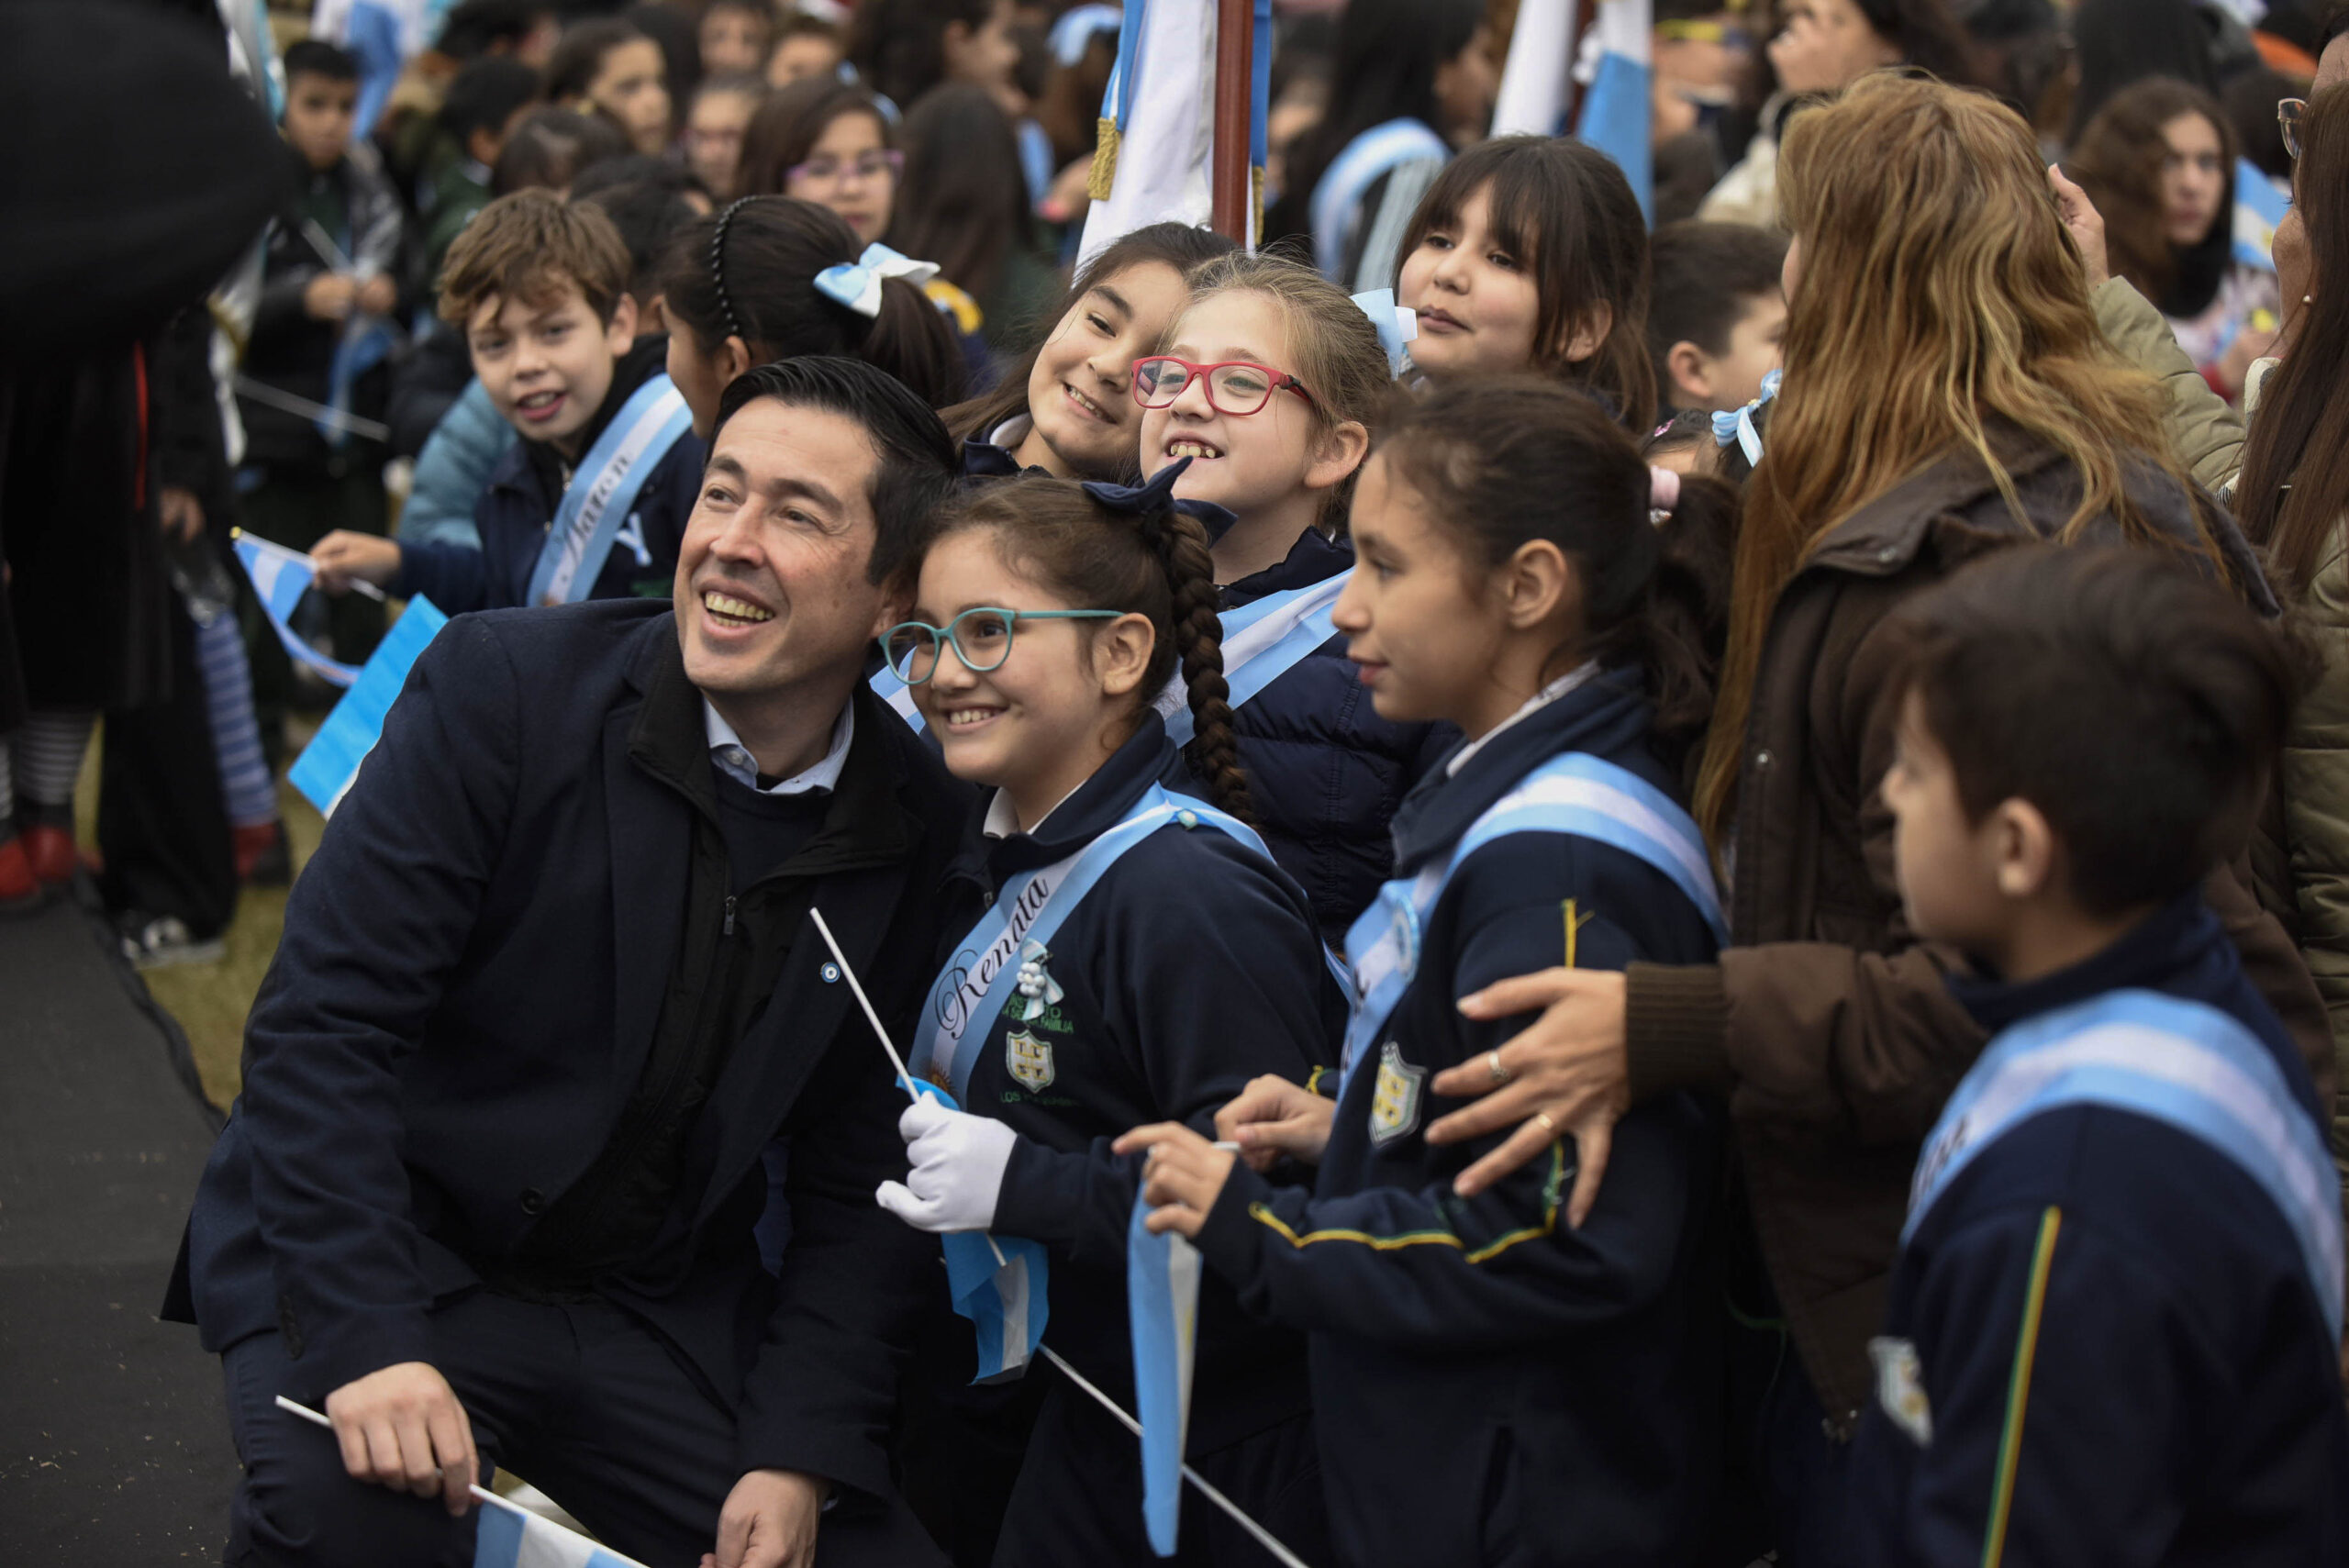 Los alumnos de 4to año de las escuelas primarias de Malvinas Argentinas, realizaron la Promesa de Lealtad a la Bandera